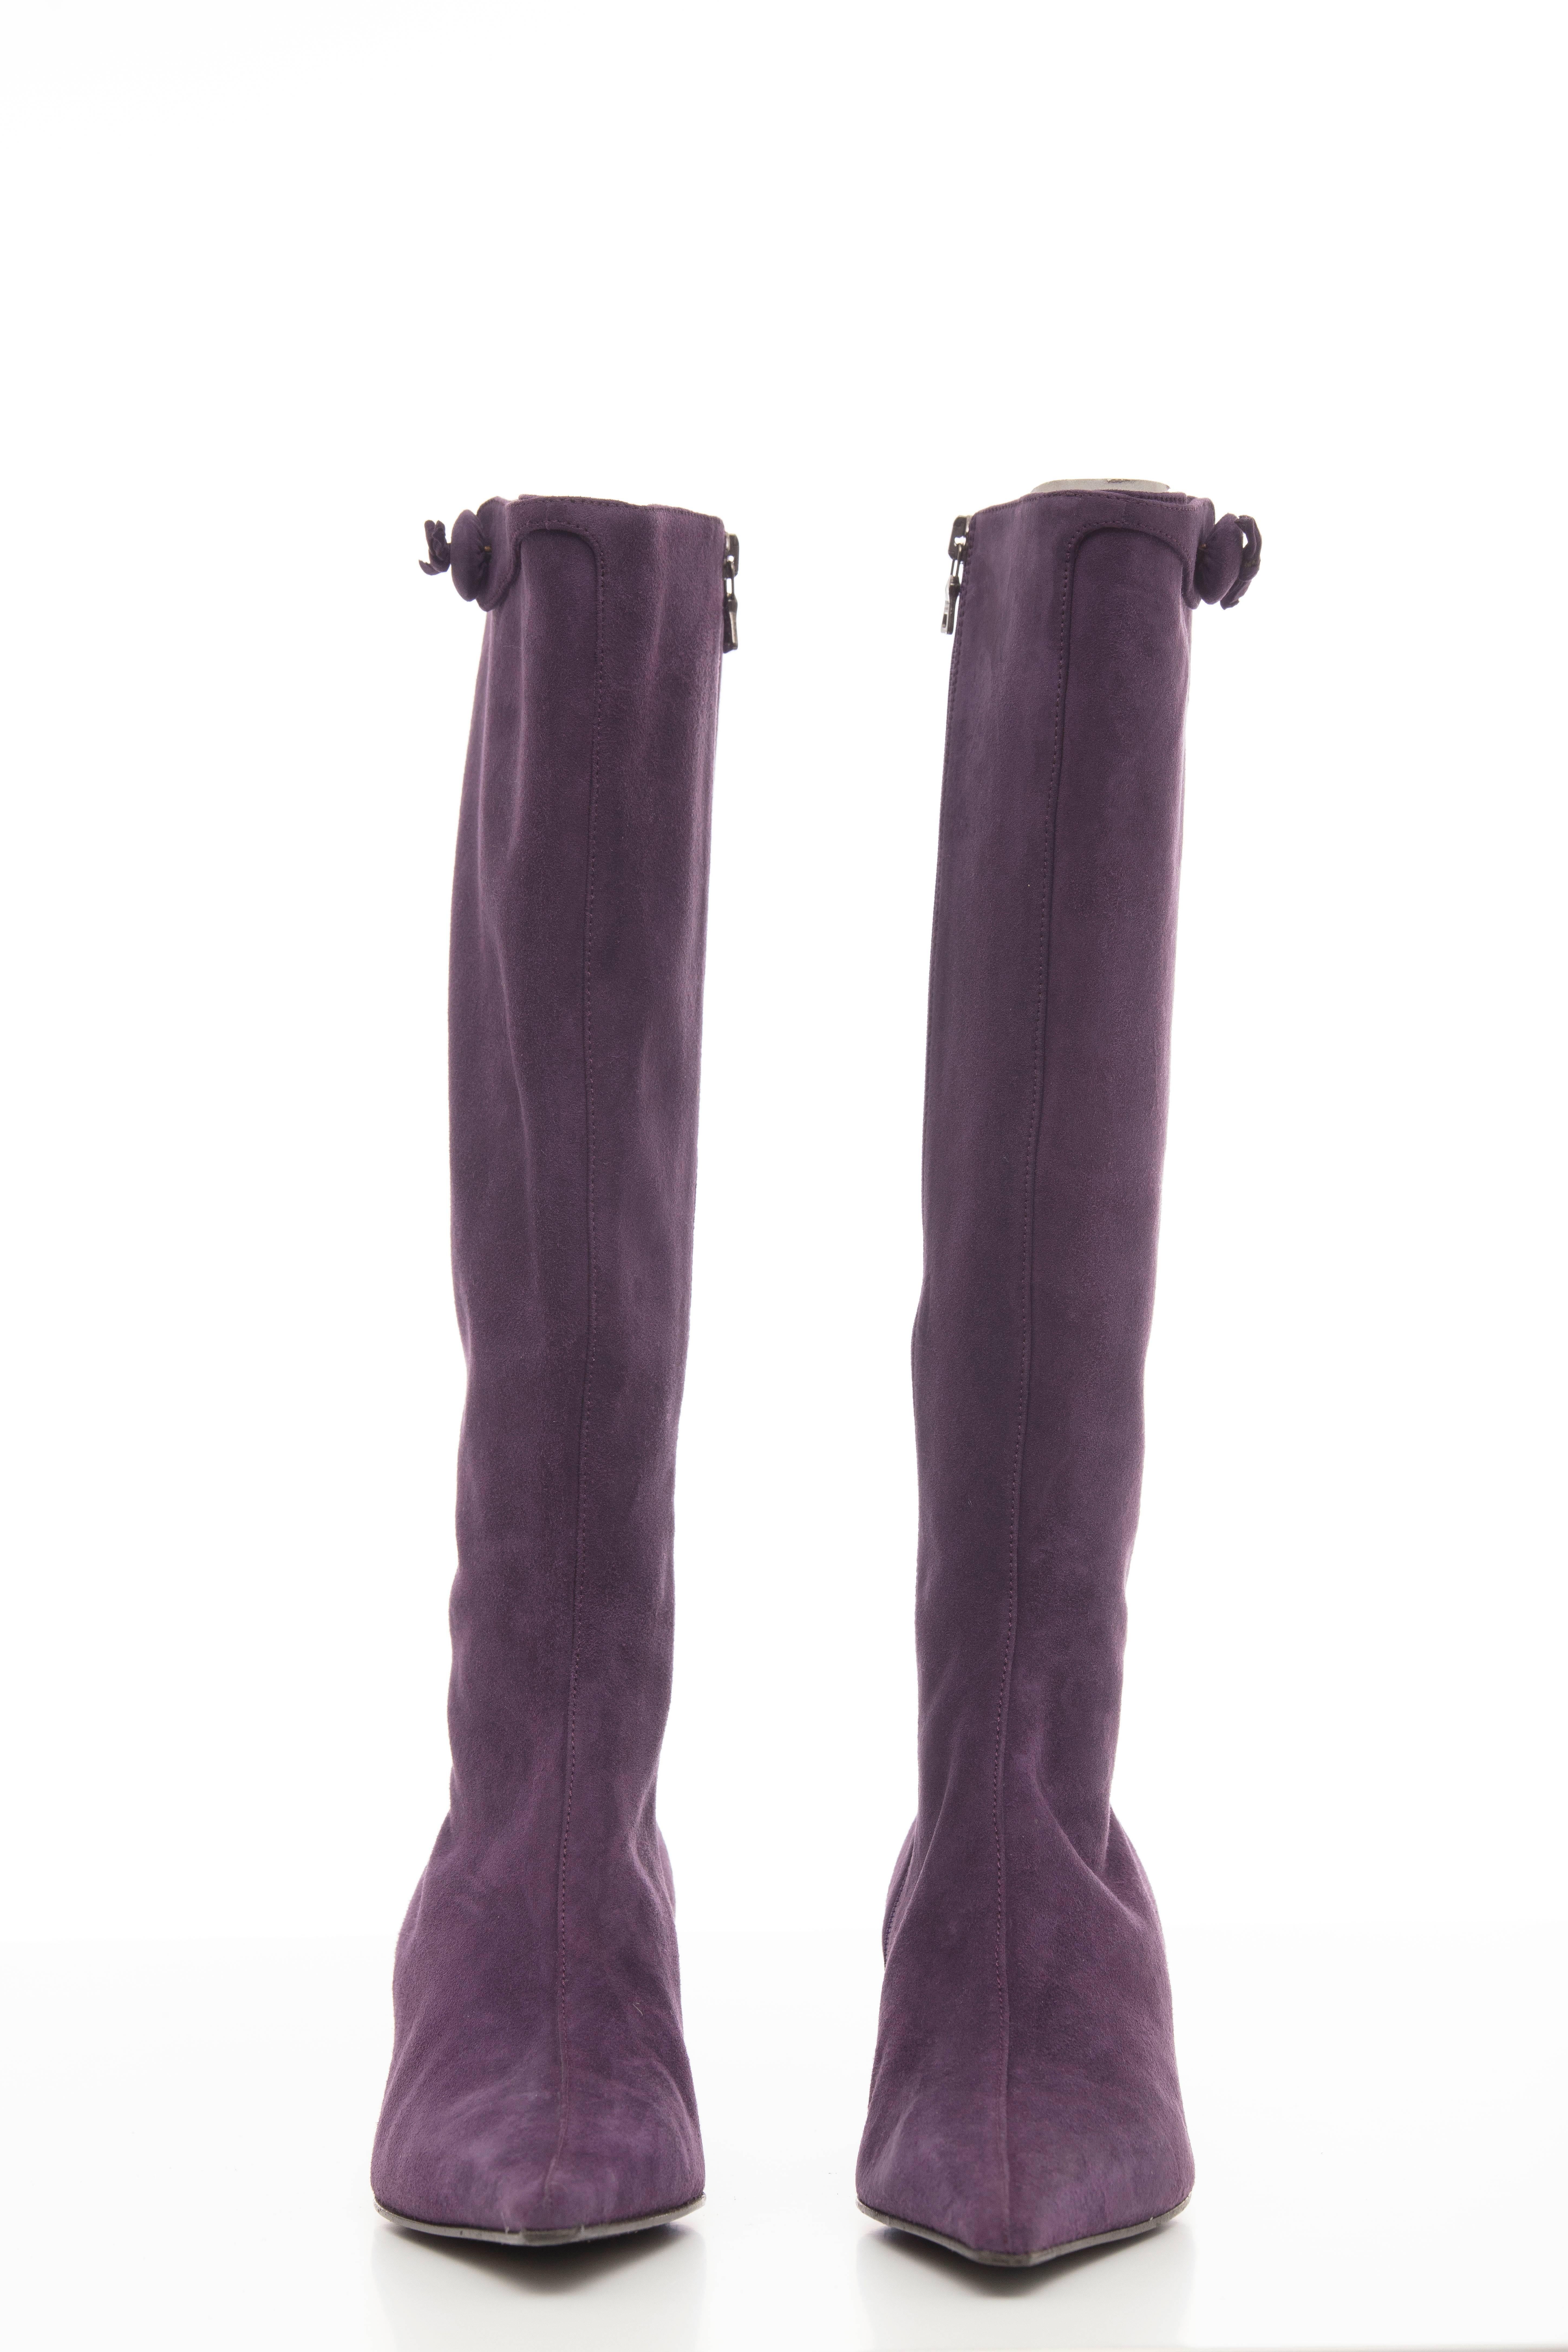 Prada Amethyst Suede Kitten Heel Boots In Excellent Condition For Sale In Cincinnati, OH